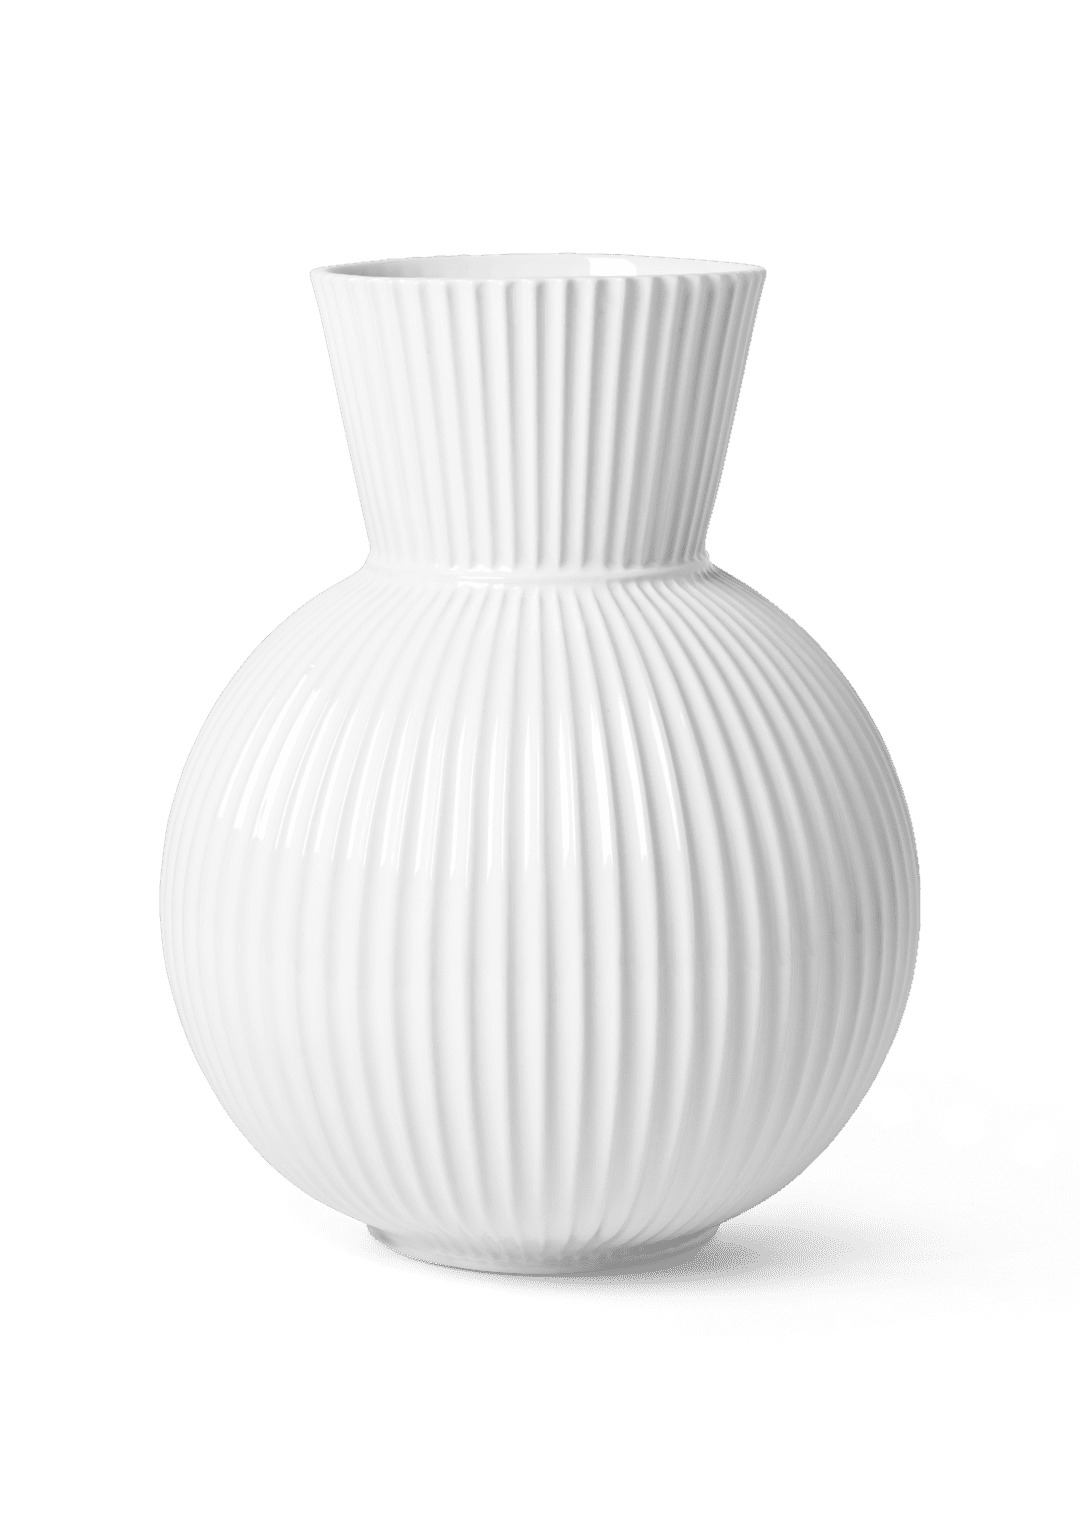 Lyngby Tura Vase H34 hvid porcelæn